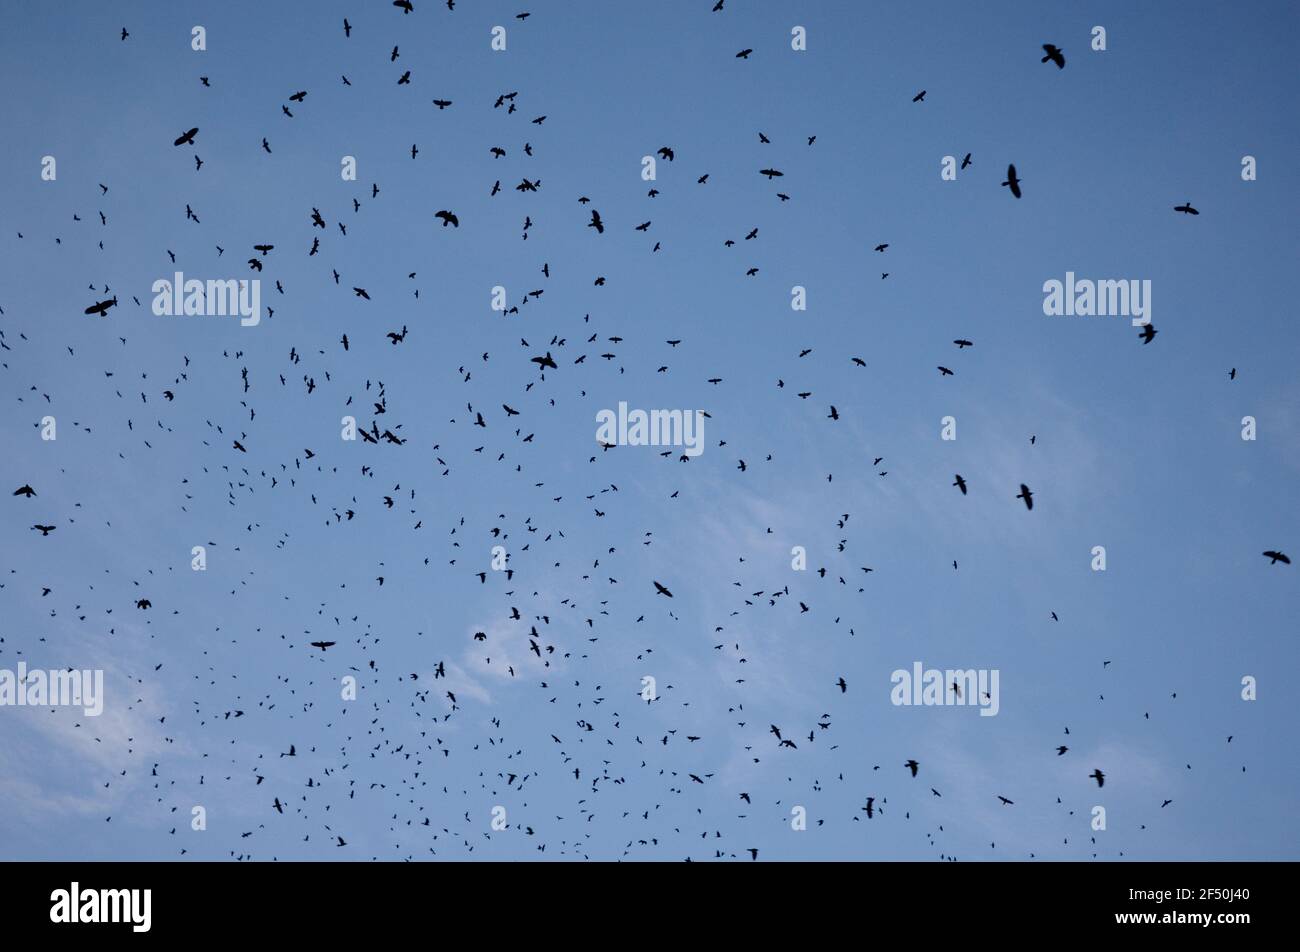 Ein Schwarm schwarzer Vögel gegen klaren blauen Himmel. Vögel bewegen sich zufällig im Flug. Silhouetten von Vögeln im freien Flug. Eine große Anzahl von Krähen Stockfoto